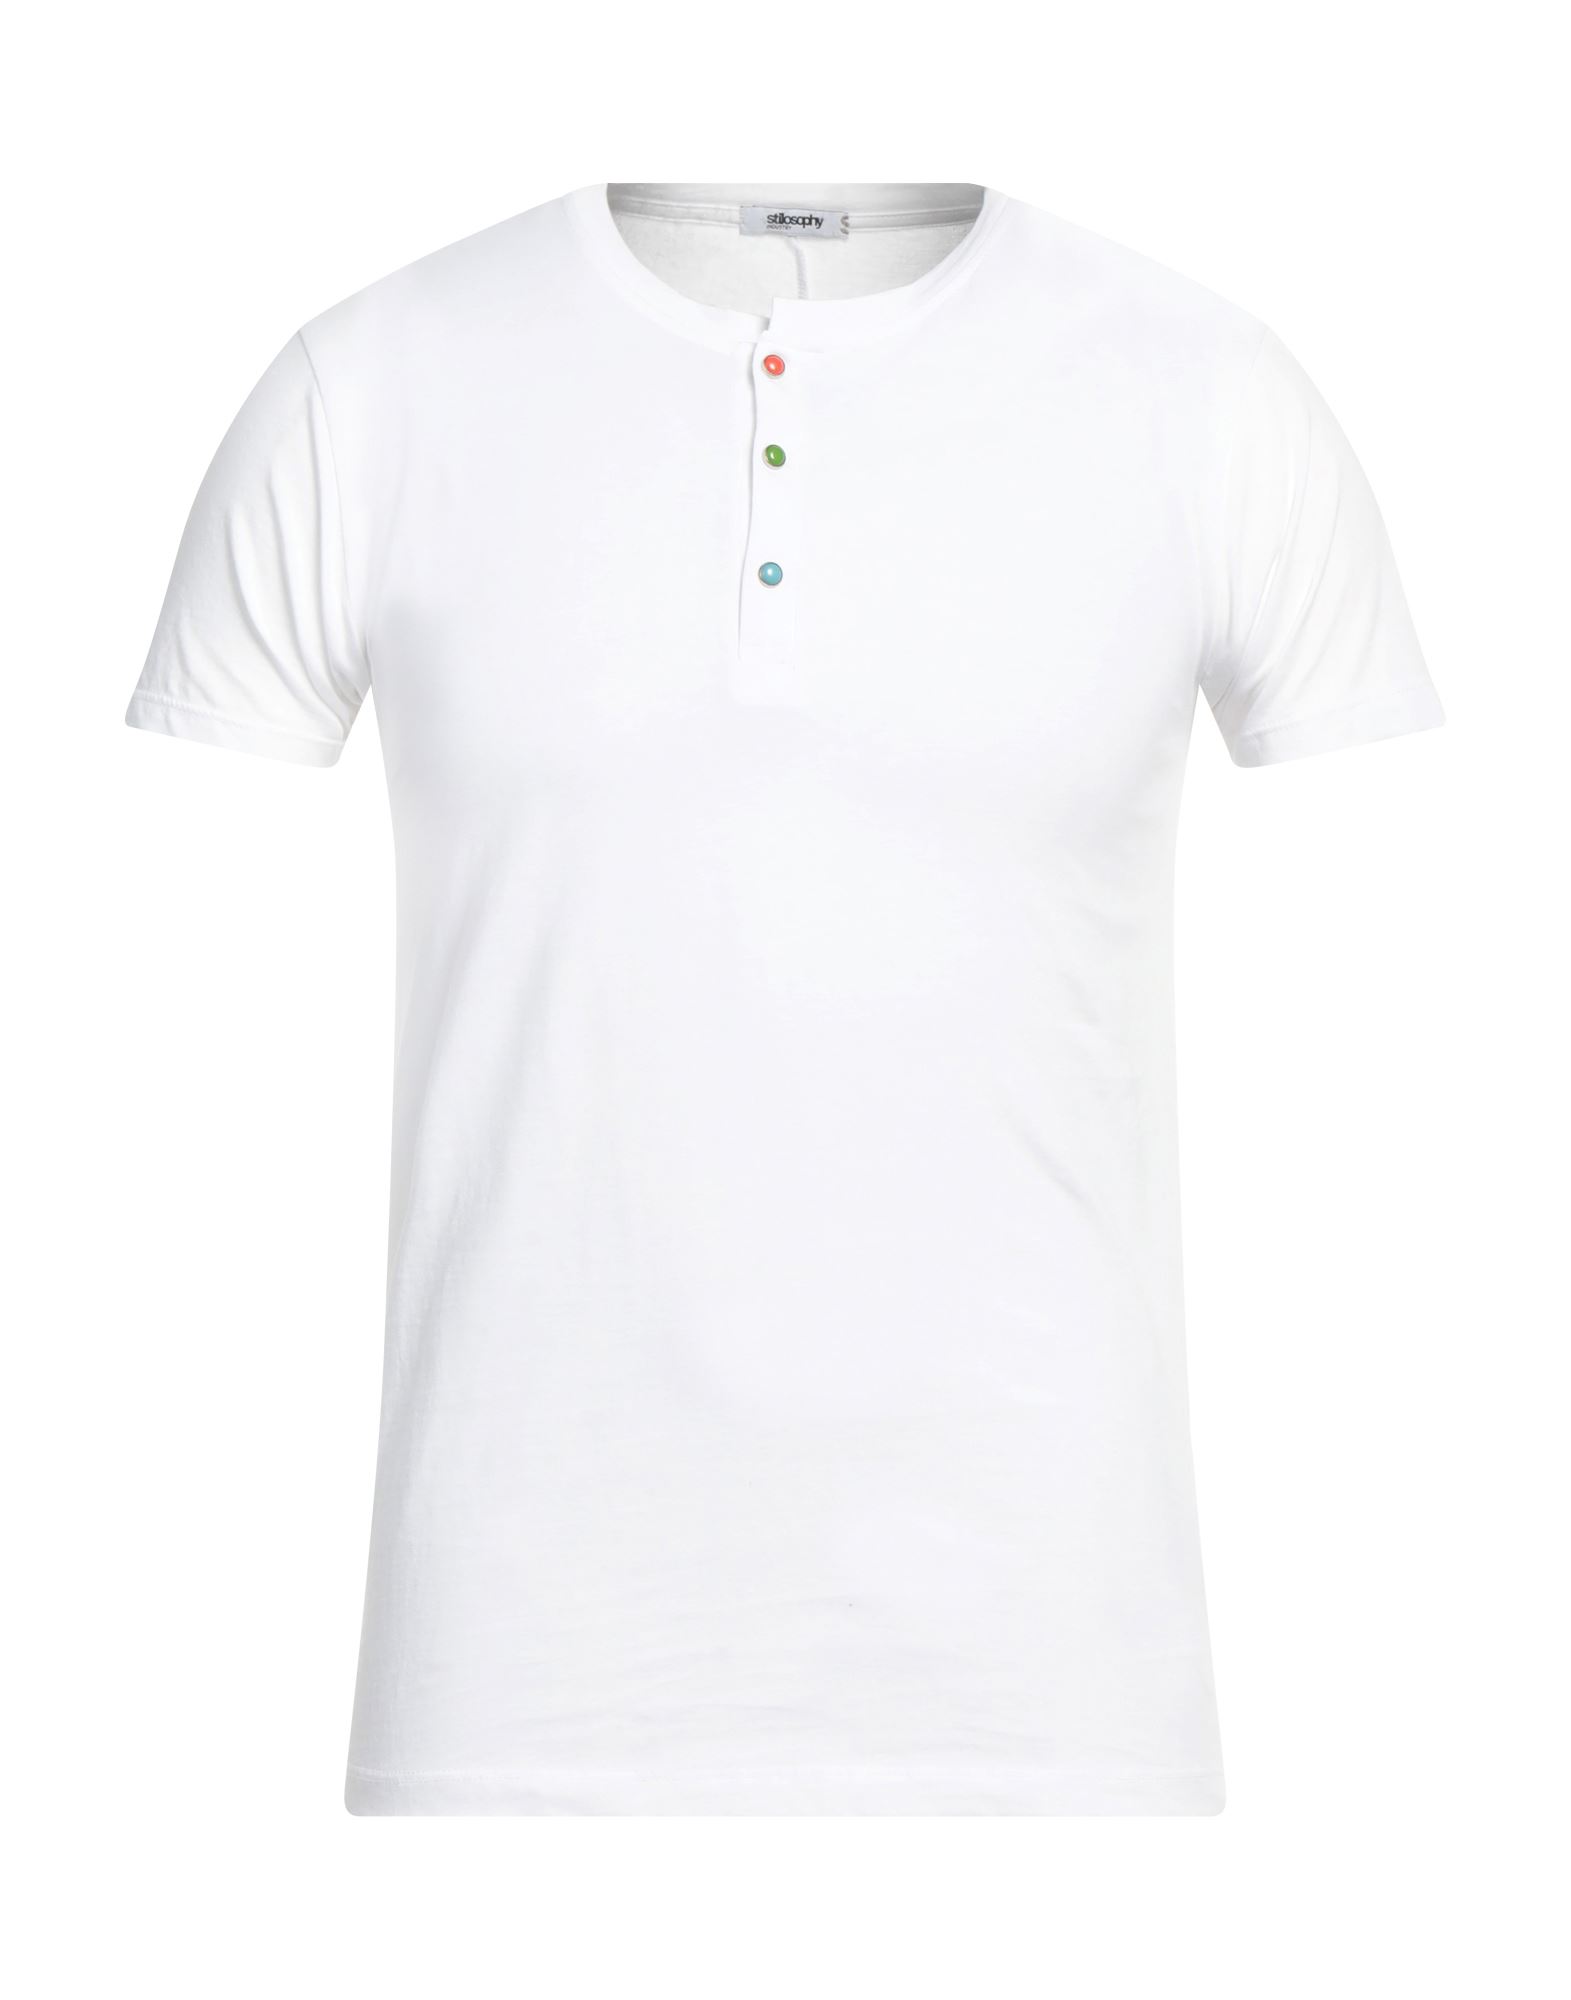 Stilosophy T-shirts In White